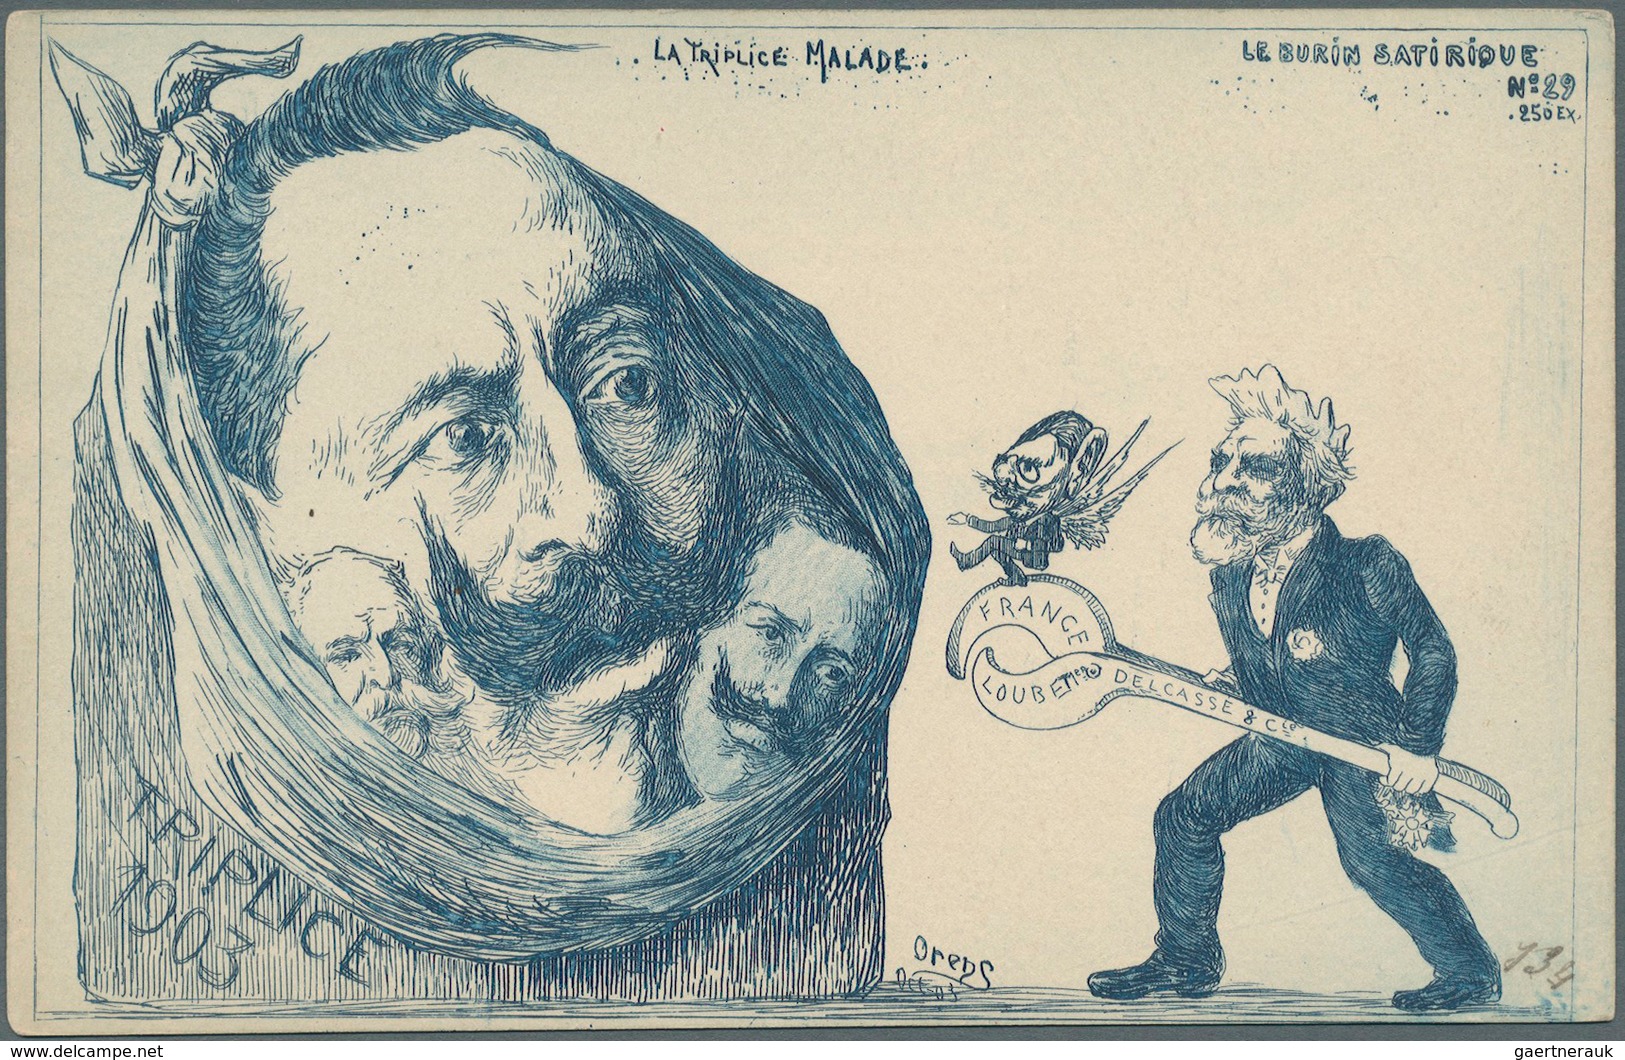 Ansichtskarten: Künstler / Artists: Orens Denizard, Le Burin Satirique, Karte Nr. 29, Auflage 250 St - Unclassified